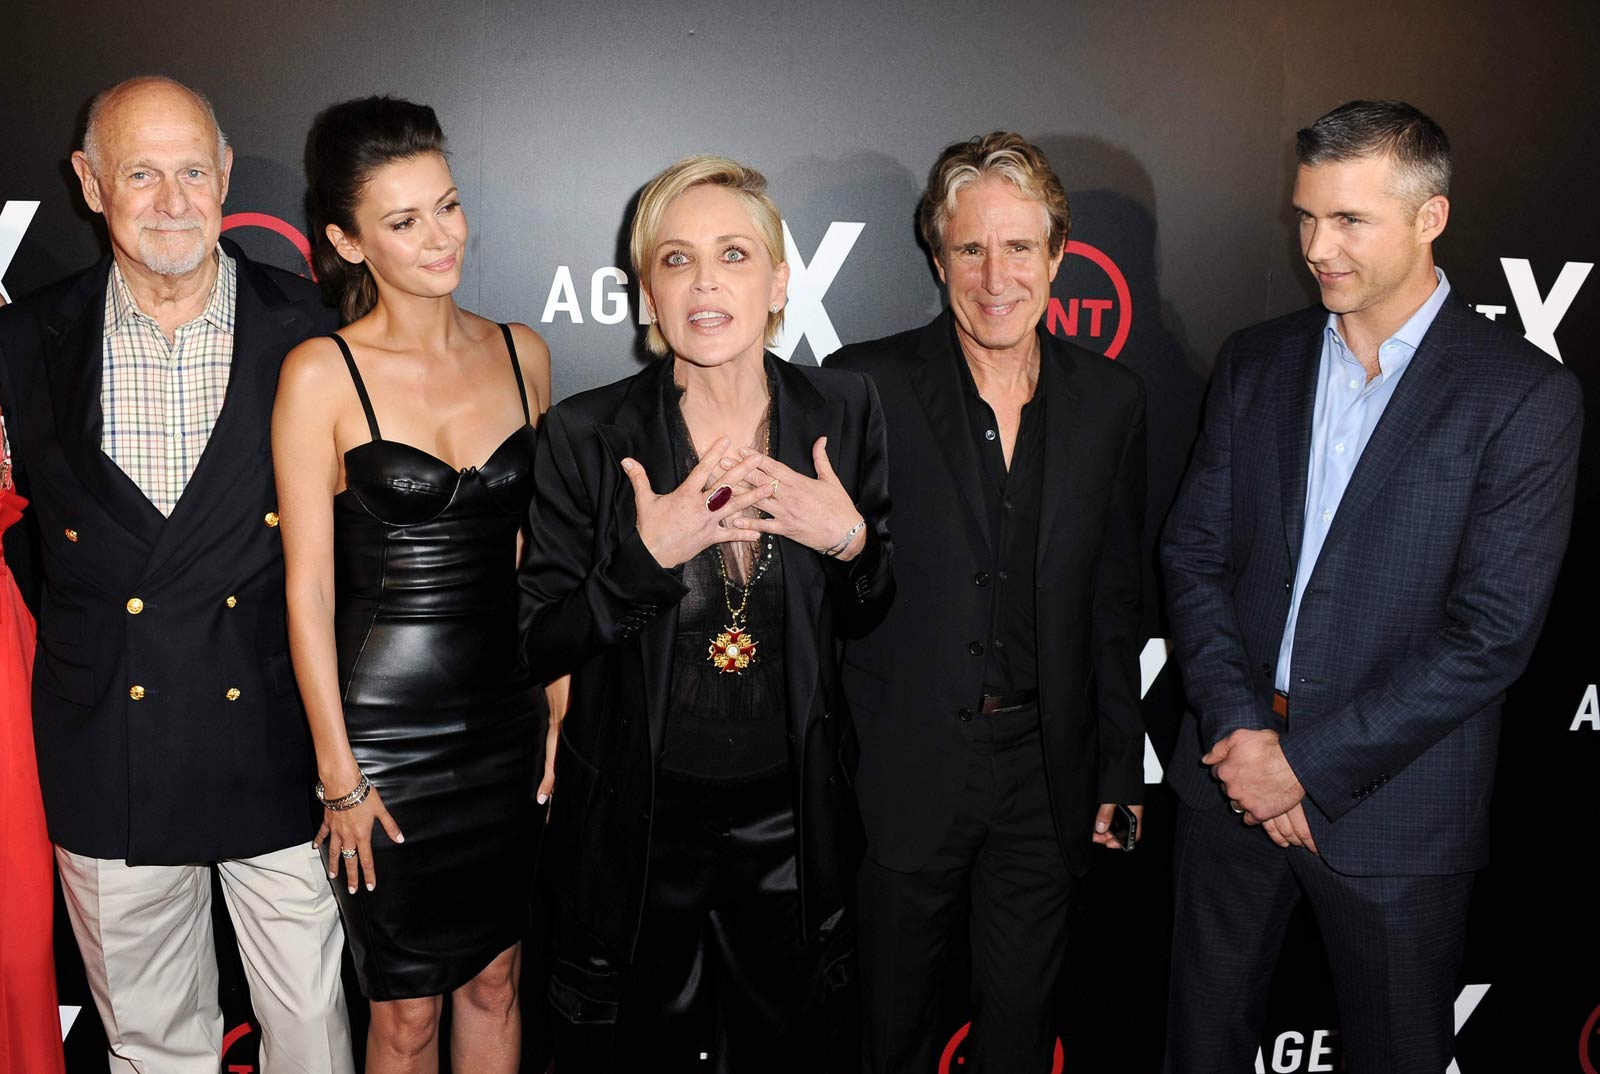 Olga Fonda attends the premiere of TNT’s Agent X